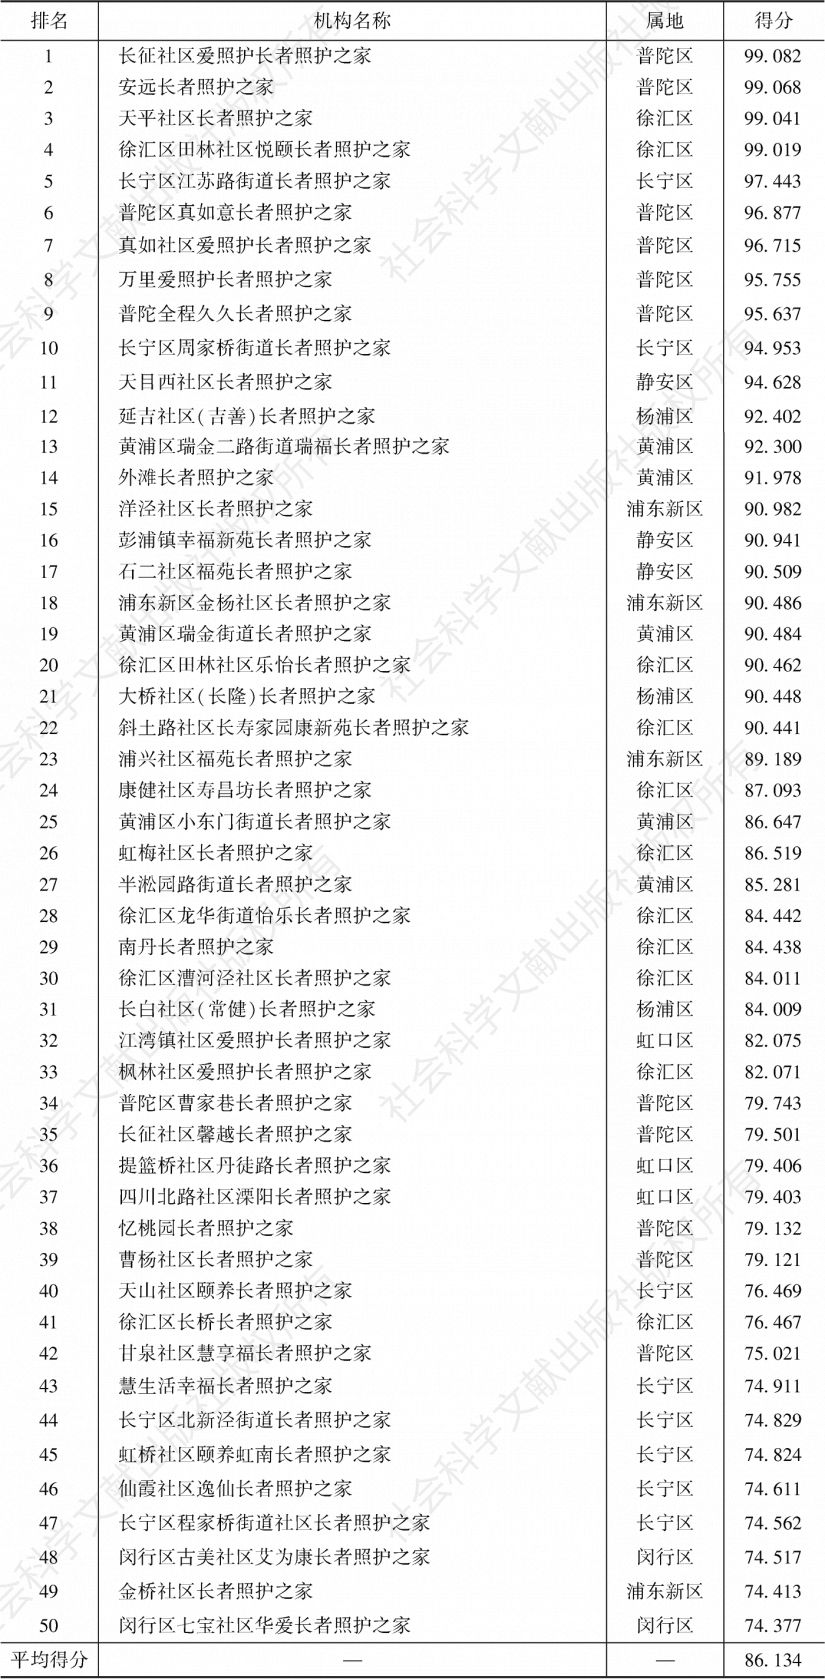 表5-24 上海市中心城区长者照护之家管理制度50强排名及得分